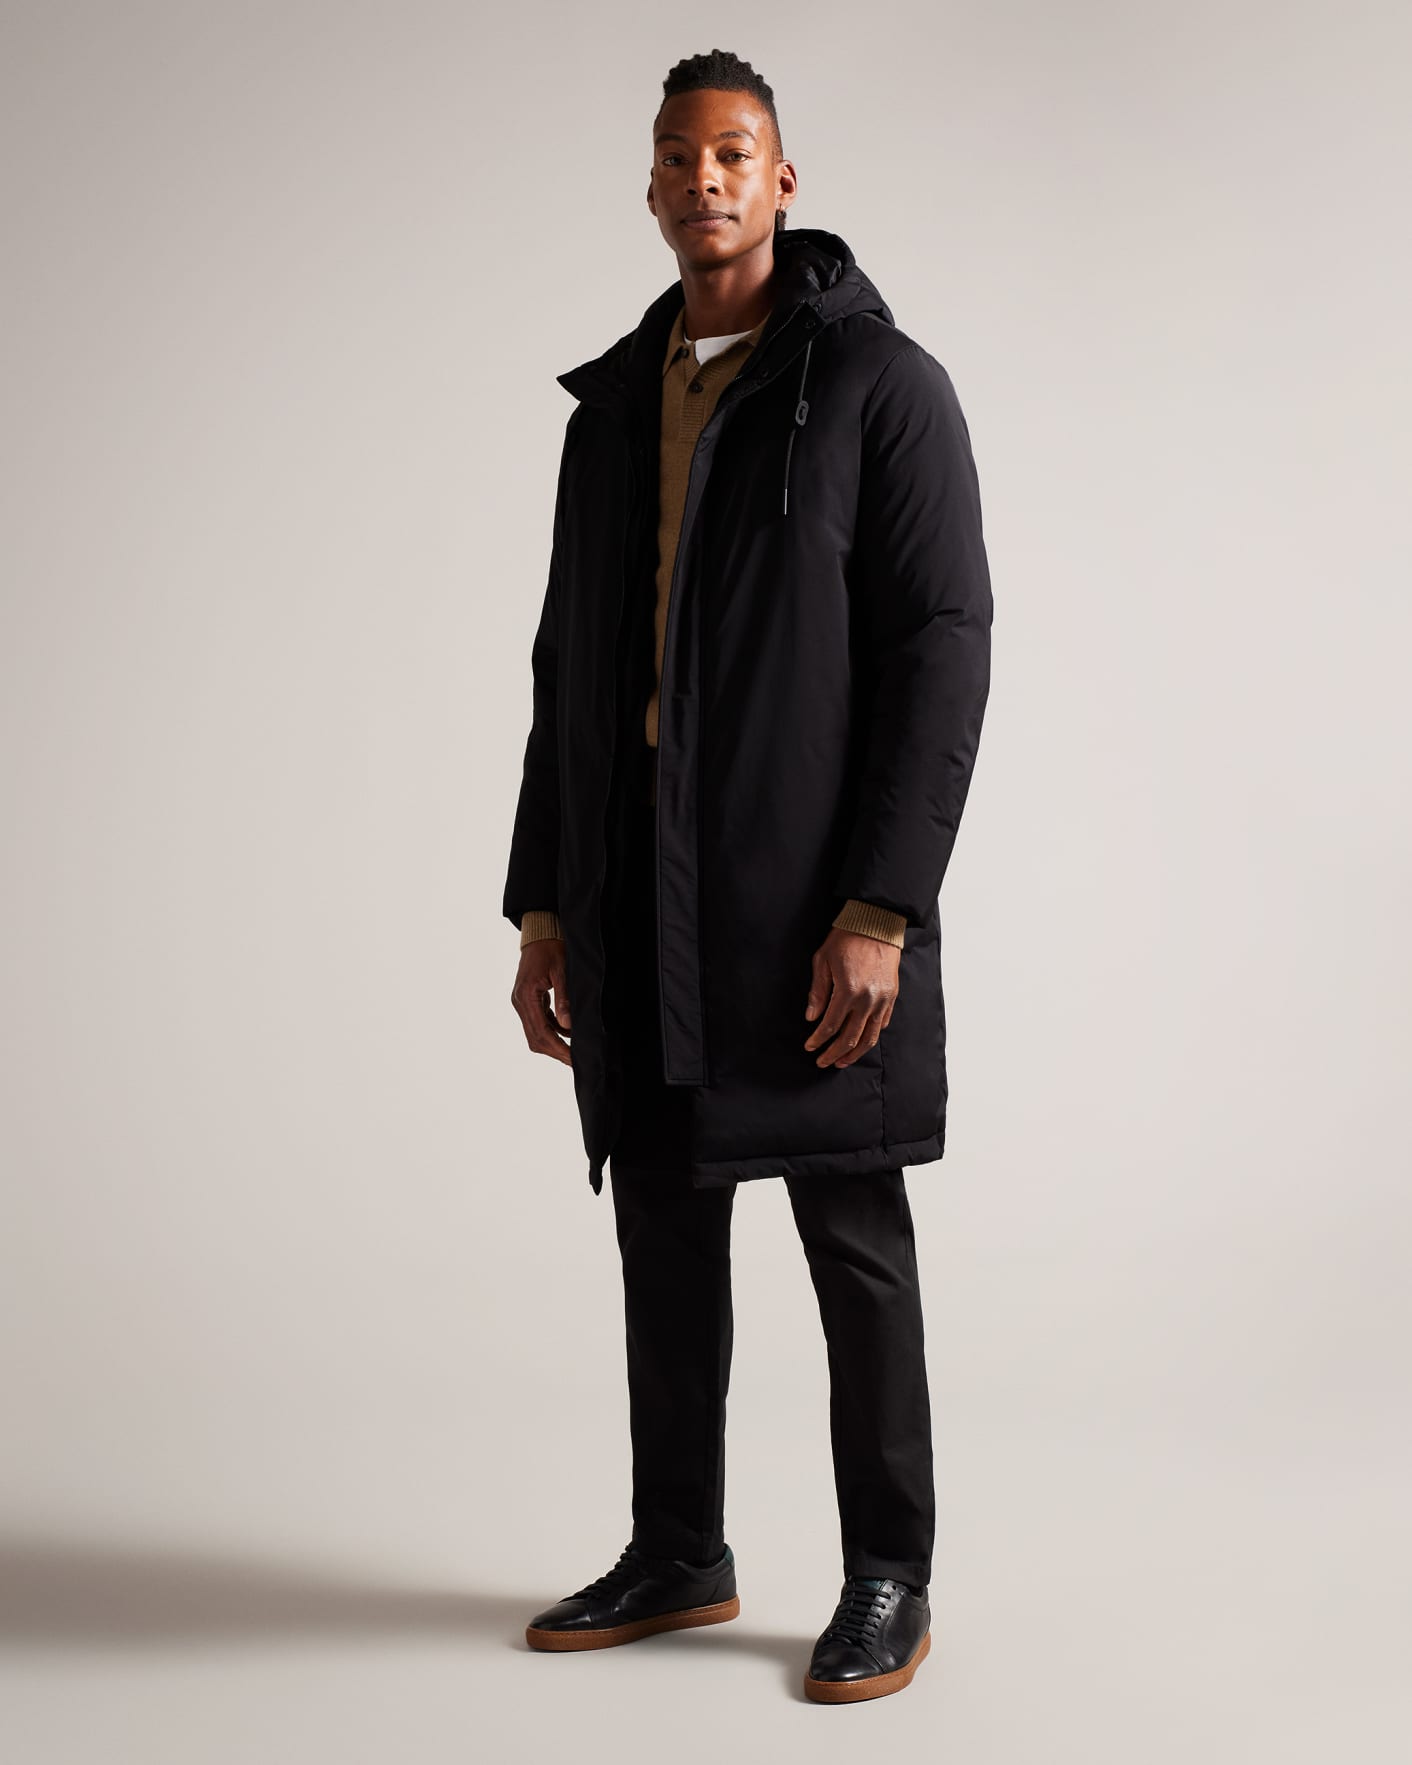 GAUCIN - BLACK, Jackets & Coats